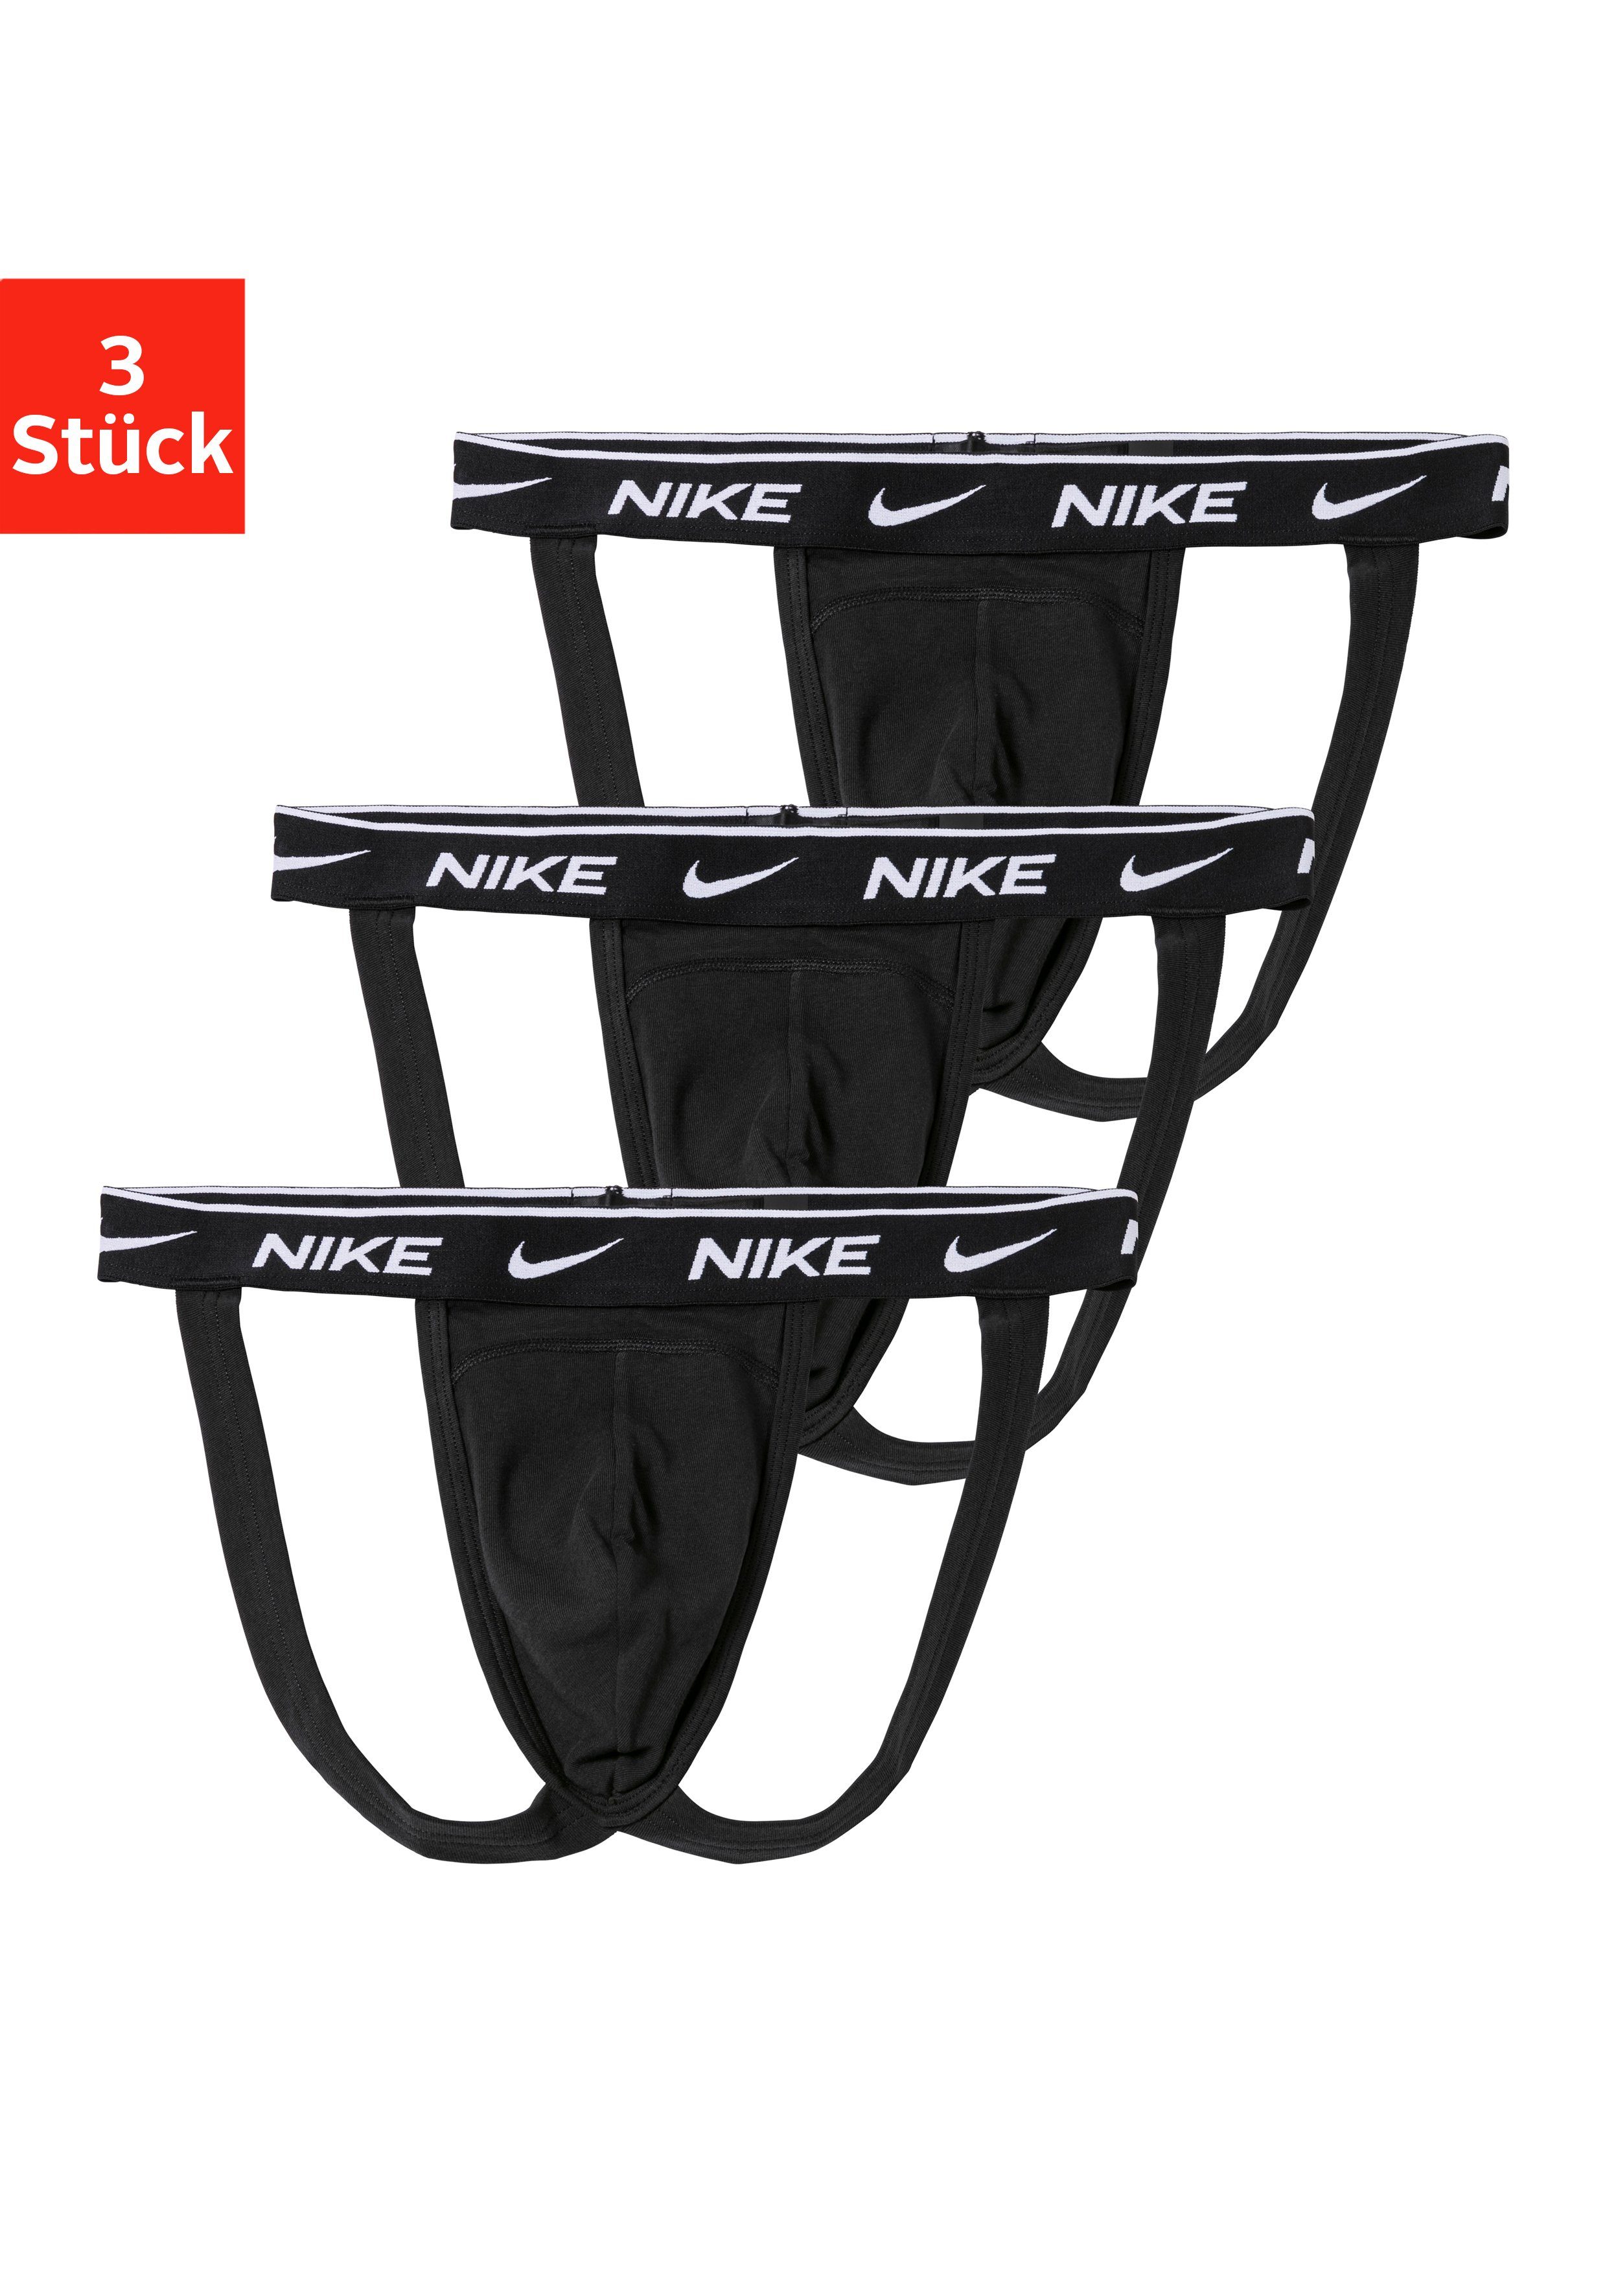 Nike String Jockstrap (3 stuks)